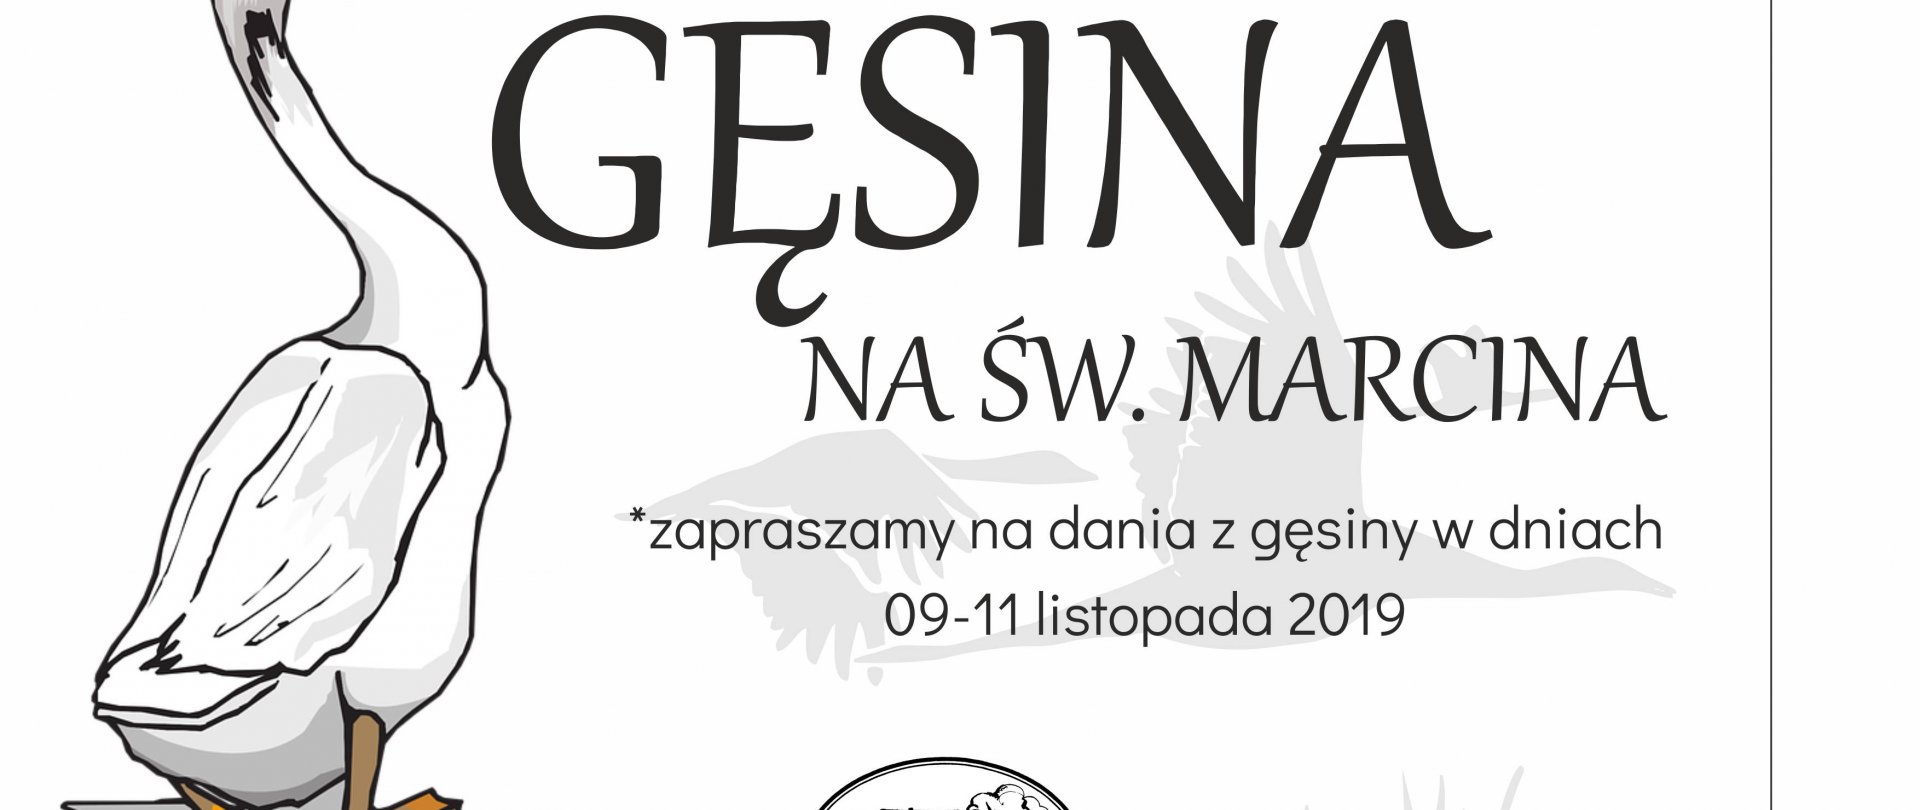 Najlepsza Gęsina na Św. Marcina - specjalne menu w dniach 9-11 litopada 2019 